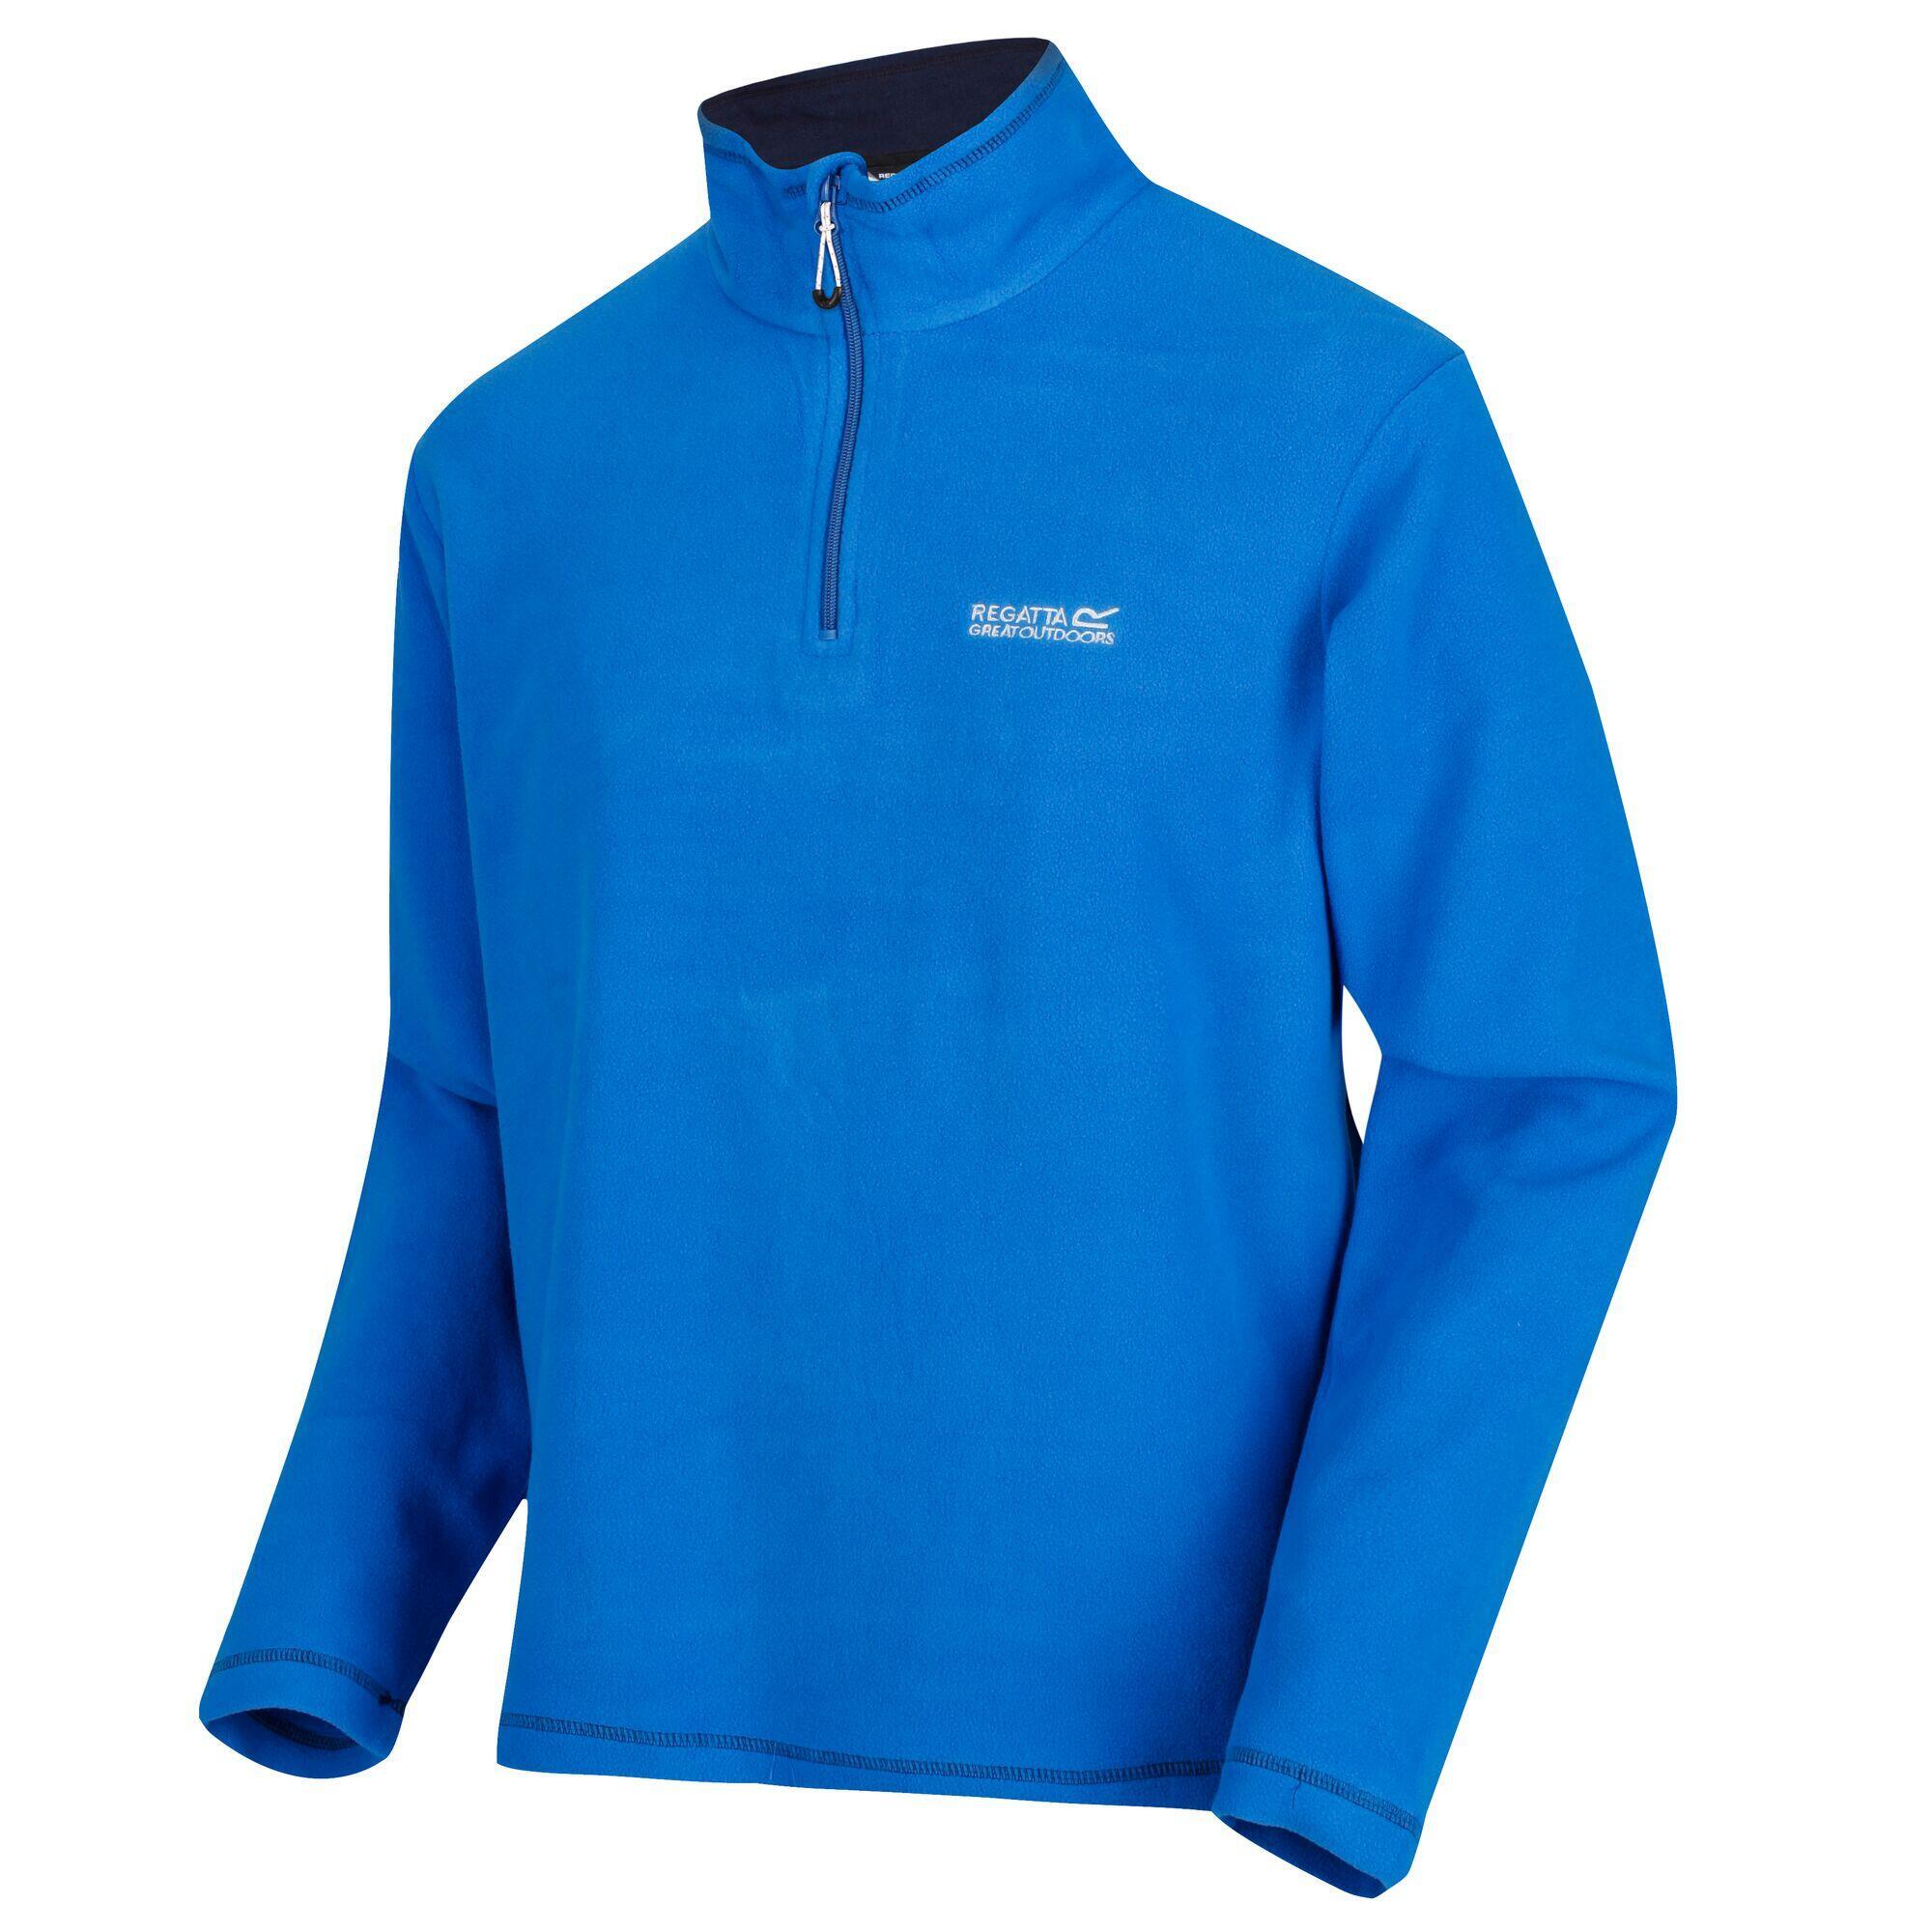 Куртка Regatta Thompson мужская флисовая, синий куртка флисовая мужская new look men 250 бирюзовая размер xl